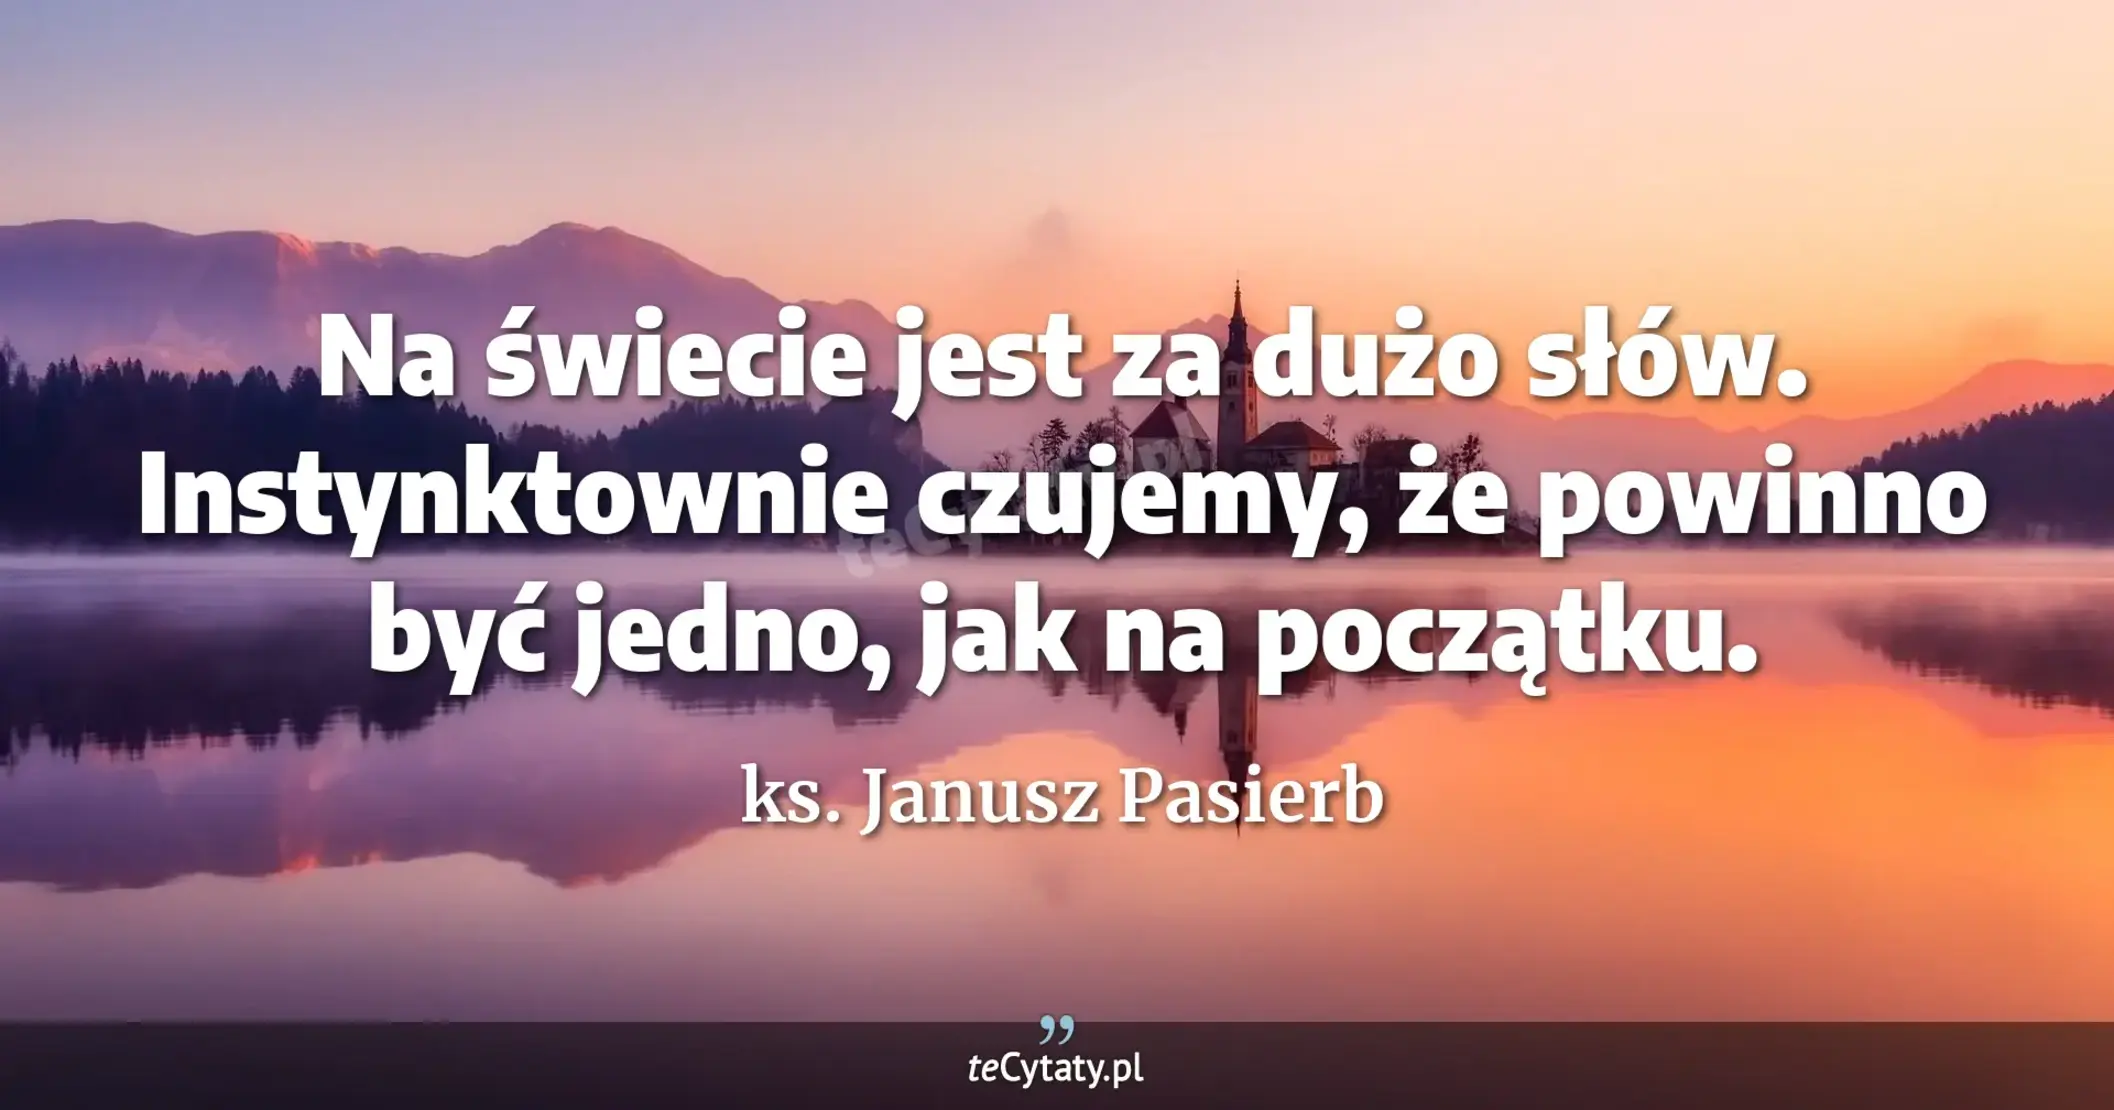 Na świecie jest za dużo słów. Instynktownie czujemy, że powinno być jedno, jak na początku. - ks. Janusz Pasierb